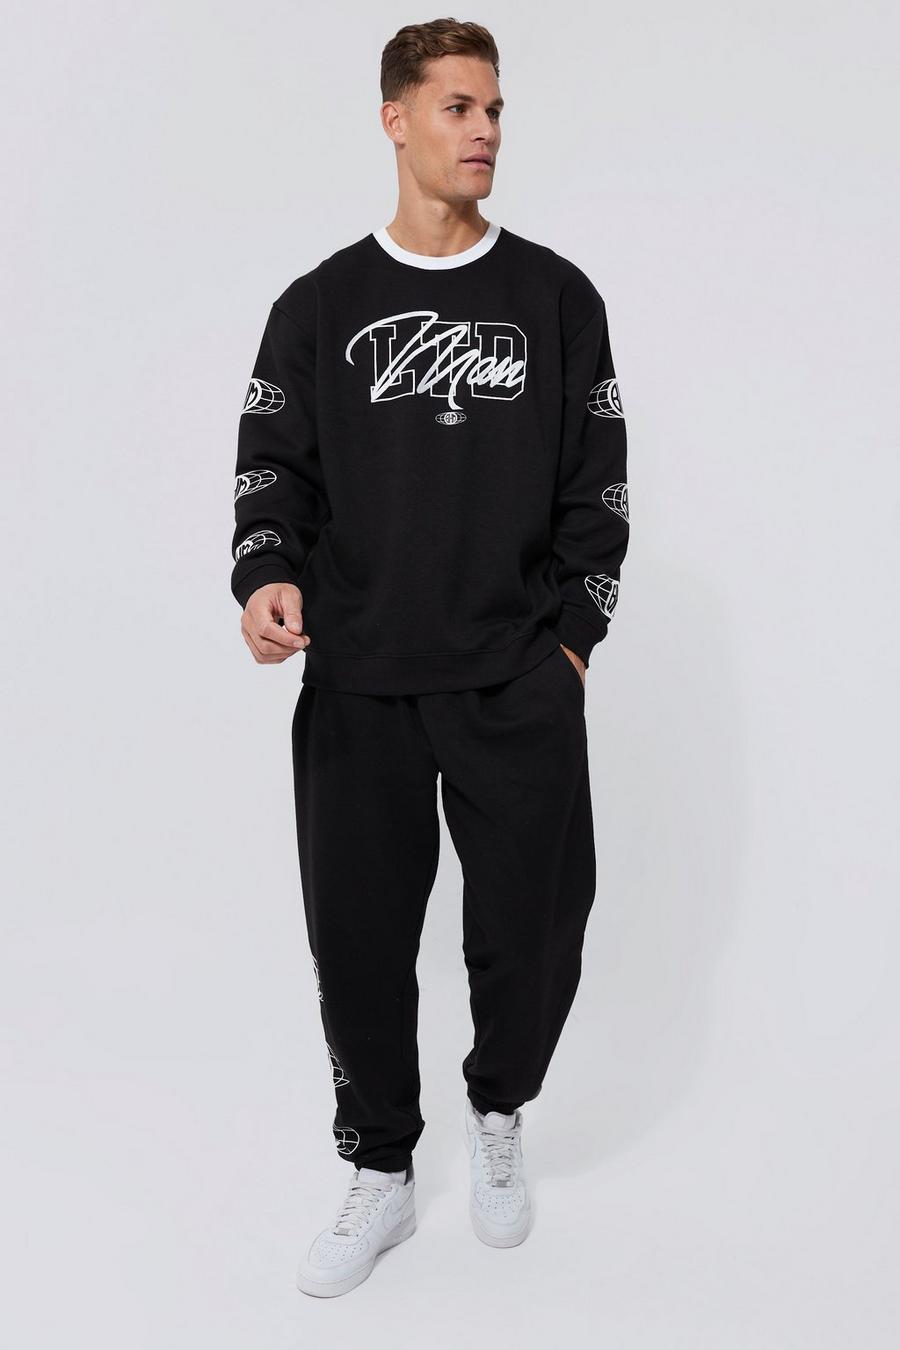 Black Tall - Ltd Edition Baggy träningsoverall med sweatshirt